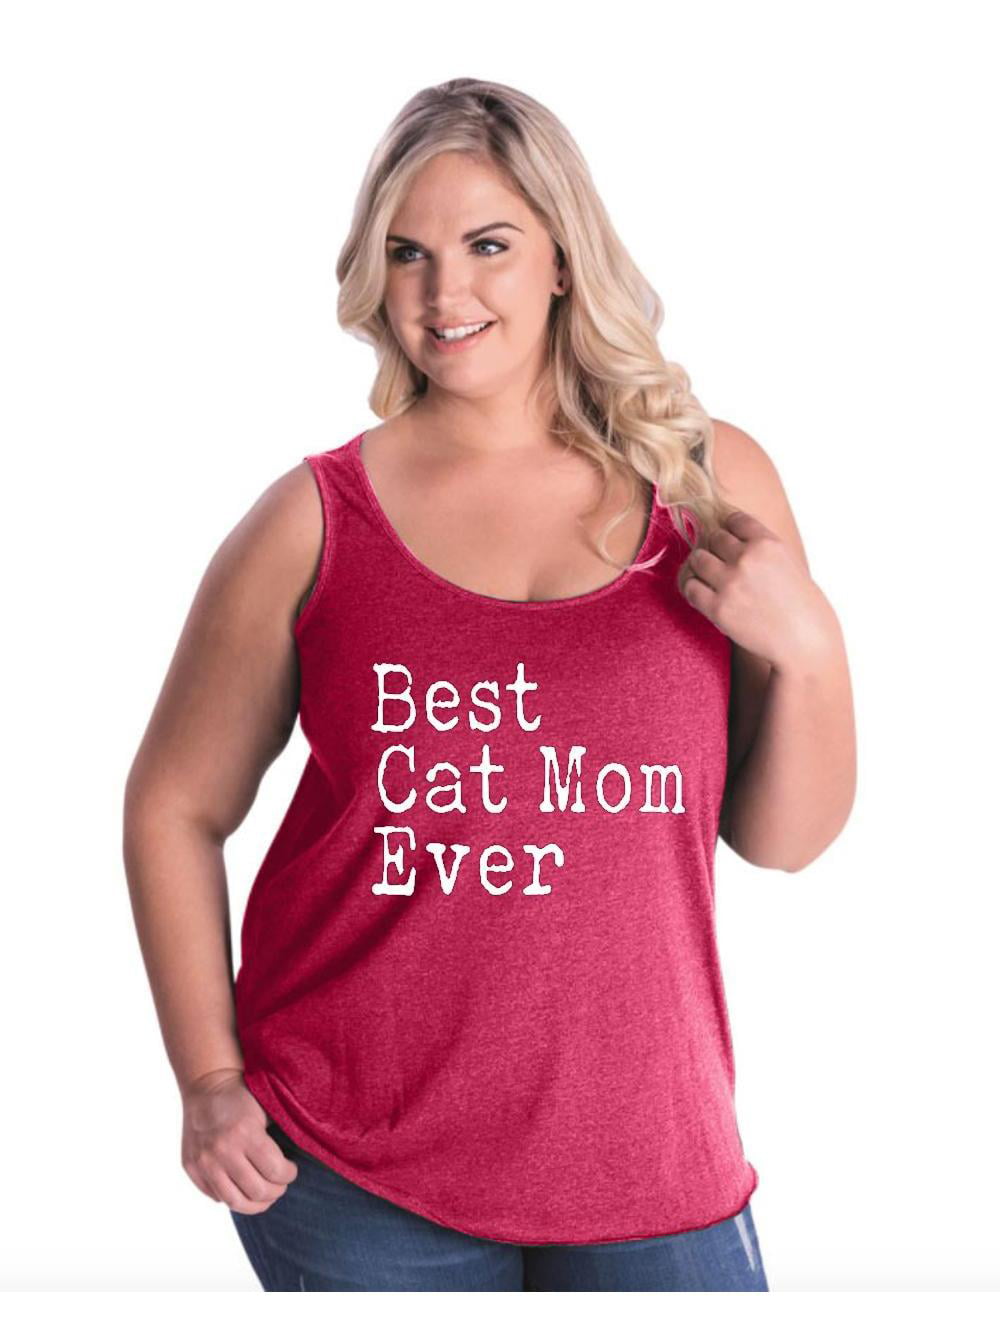 Cat Tank Top Wildflower Shirt Cat Mom Gift Floral Tank Top Cat Lady Black Cat Shirt Floral Print Gardening Gift